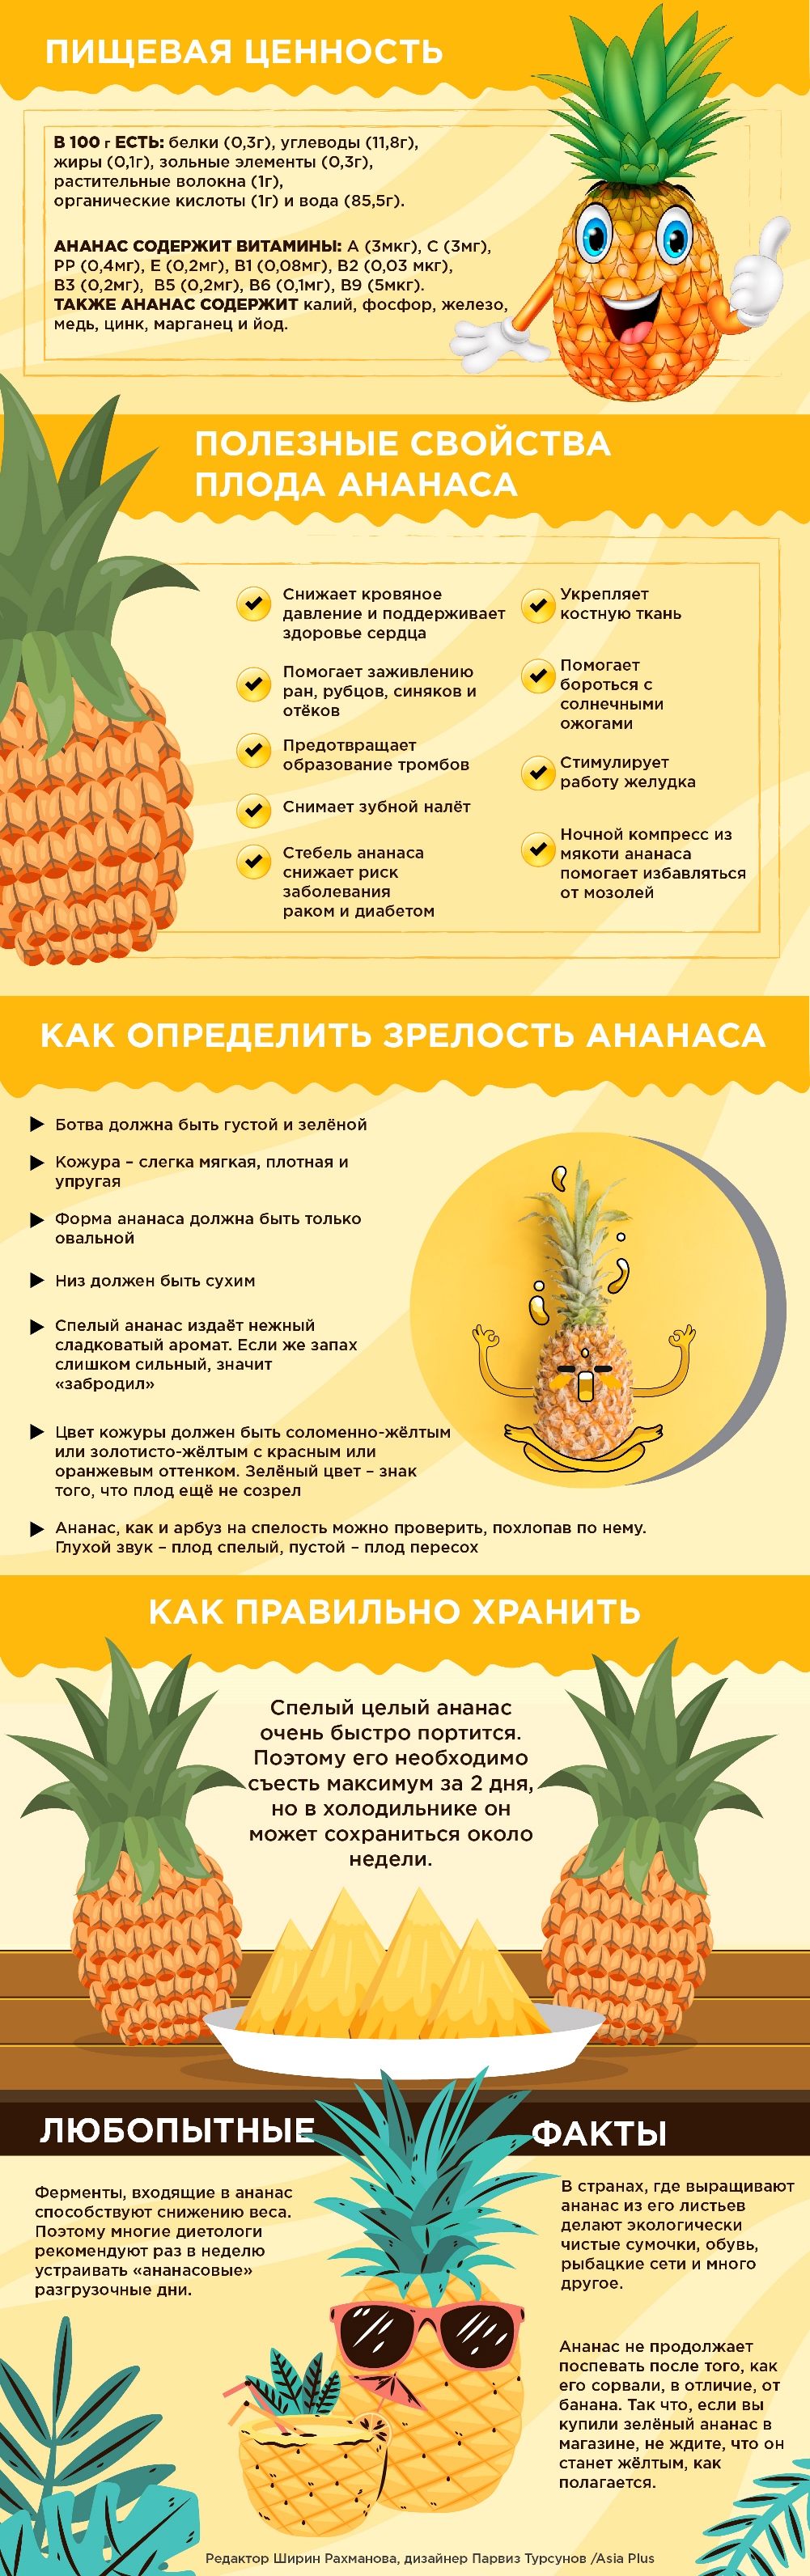 Как правильно хранить ананасы до Нового года свежими